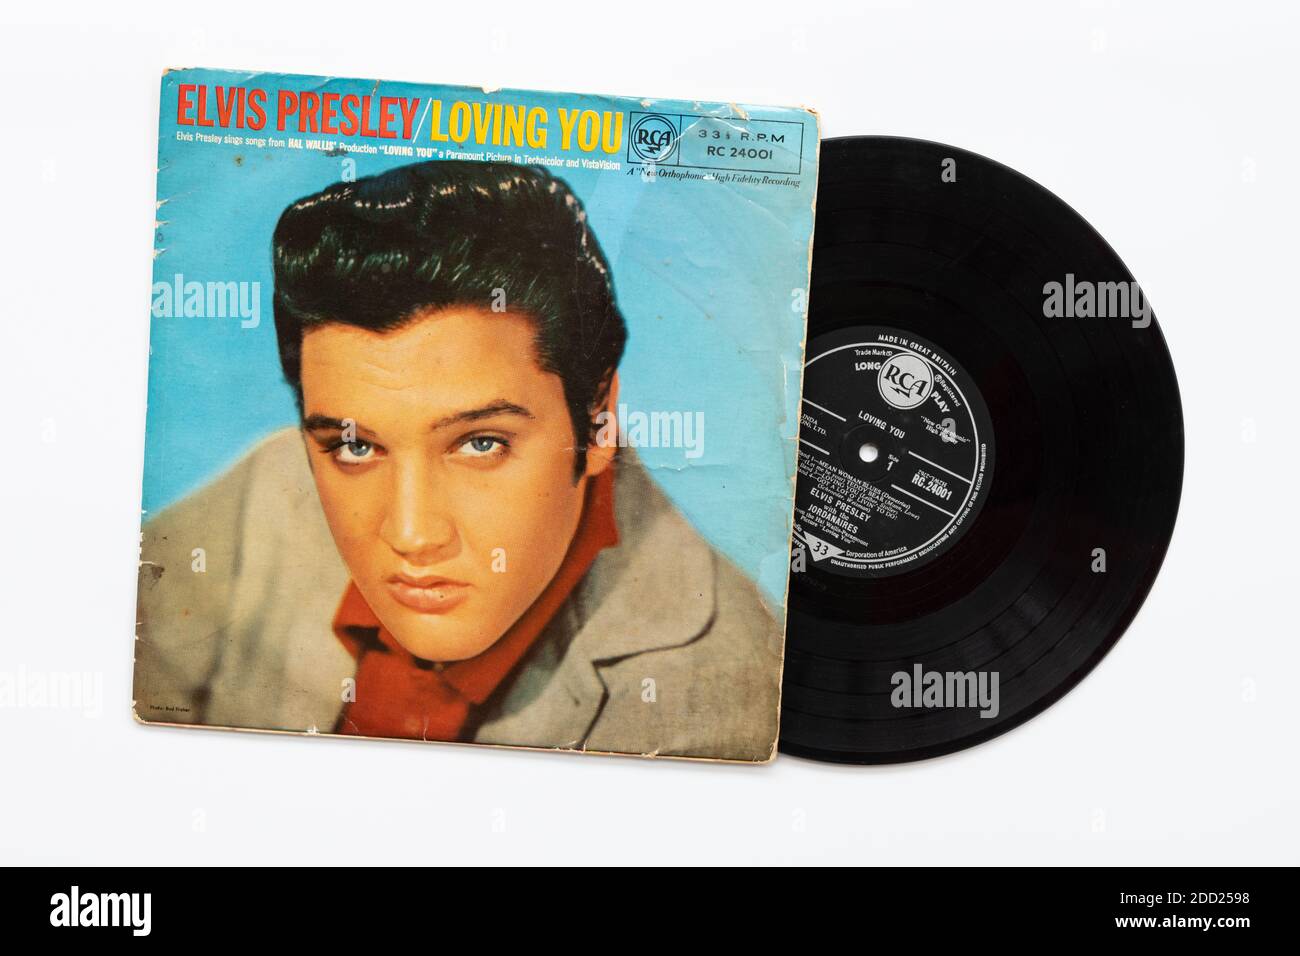 Elvis Presley - Loving You - soundtrack album Stock Photo